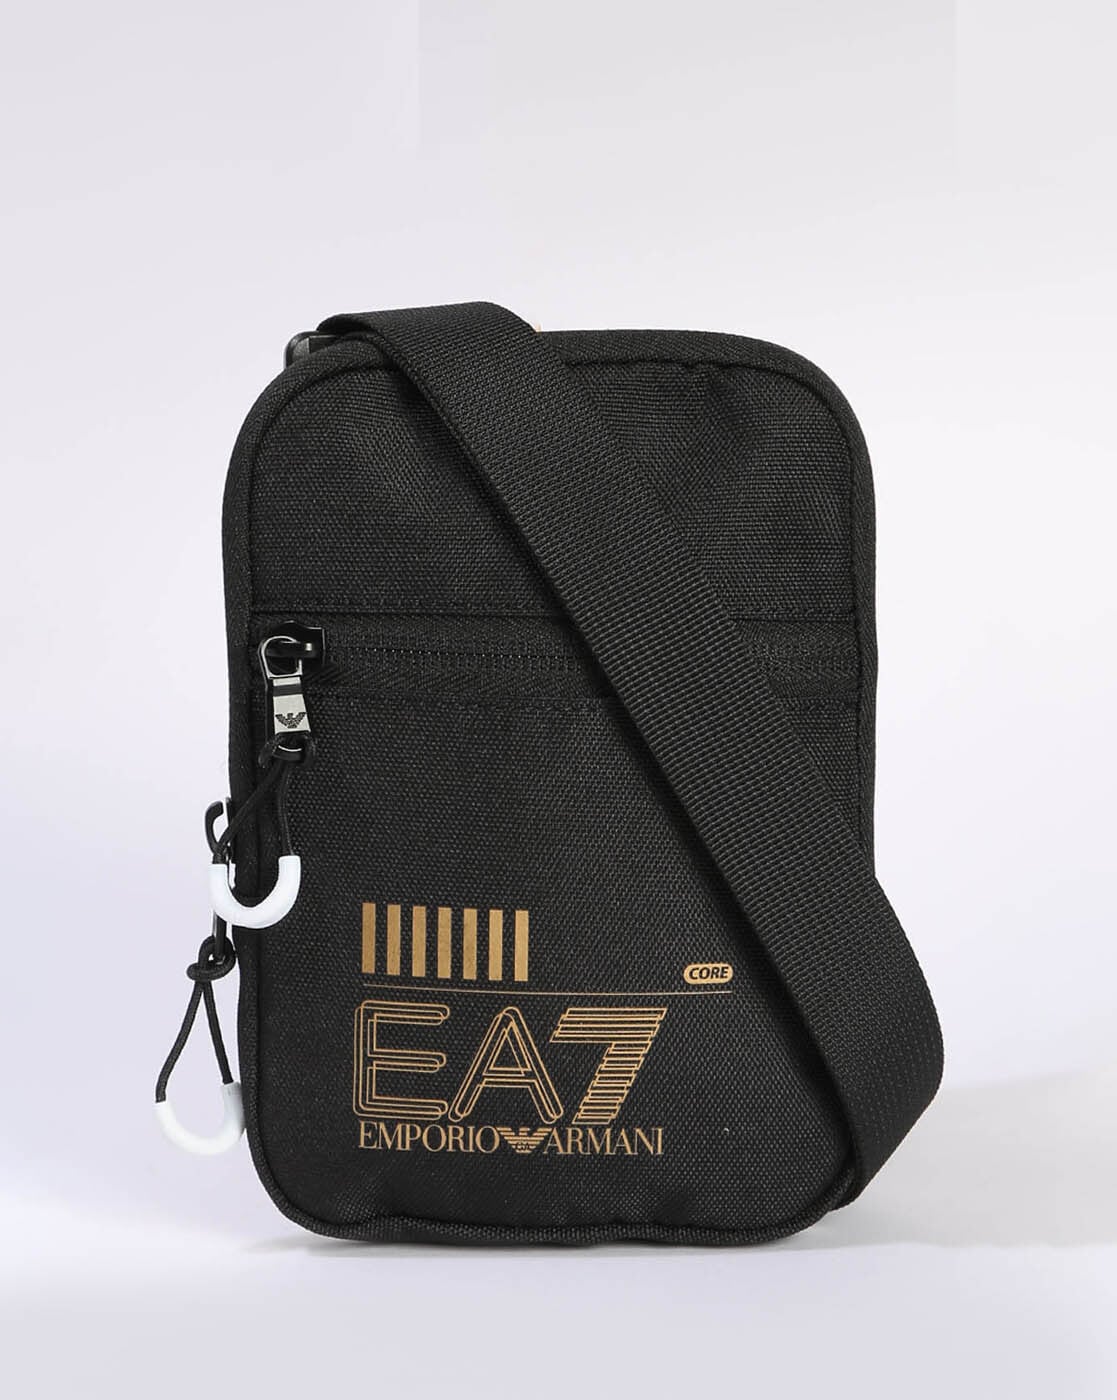 EA7 Emporio Armani TRAIN CORE POUCH BAG SMALL UNISEX - Across body bag -  black - Zalando.co.uk